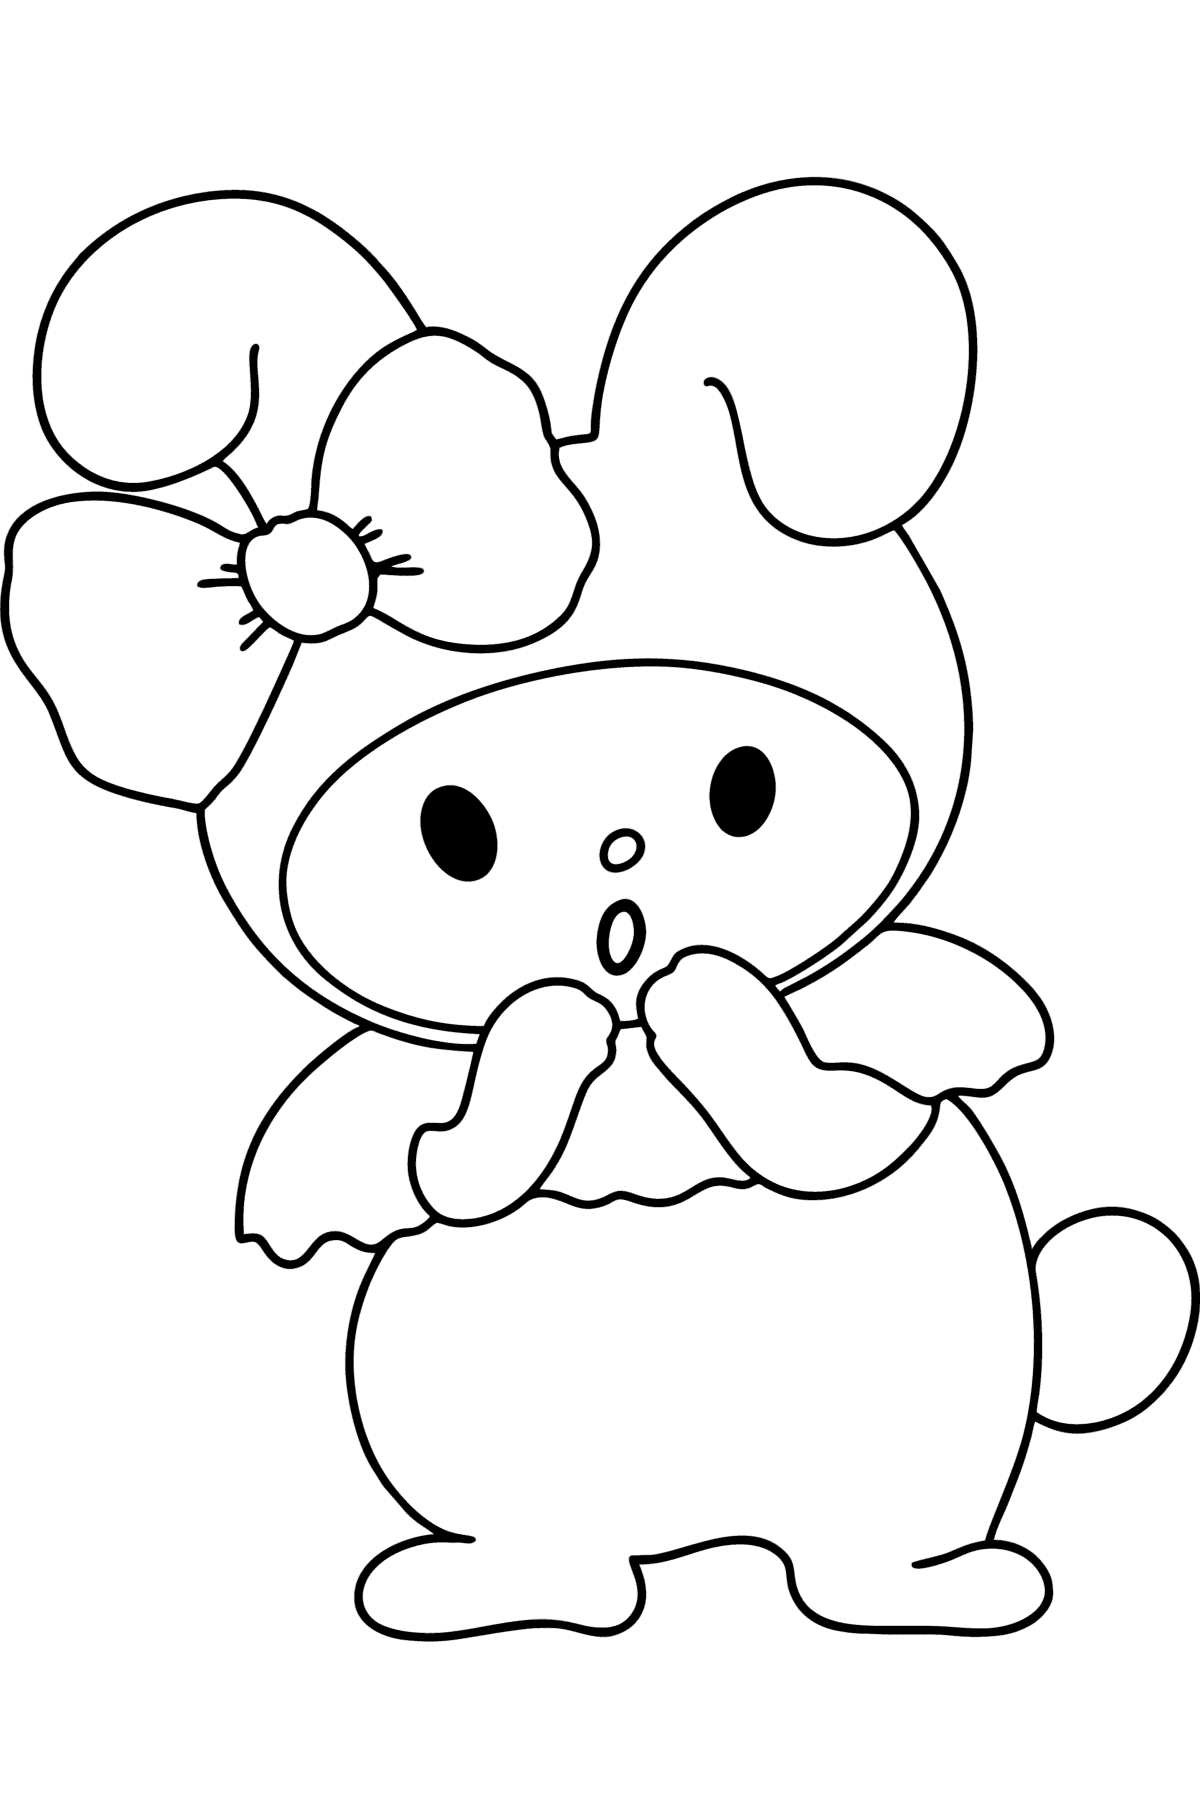 Ausmalbild Hello Kitty My Melody - Malvorlagen für Kinder